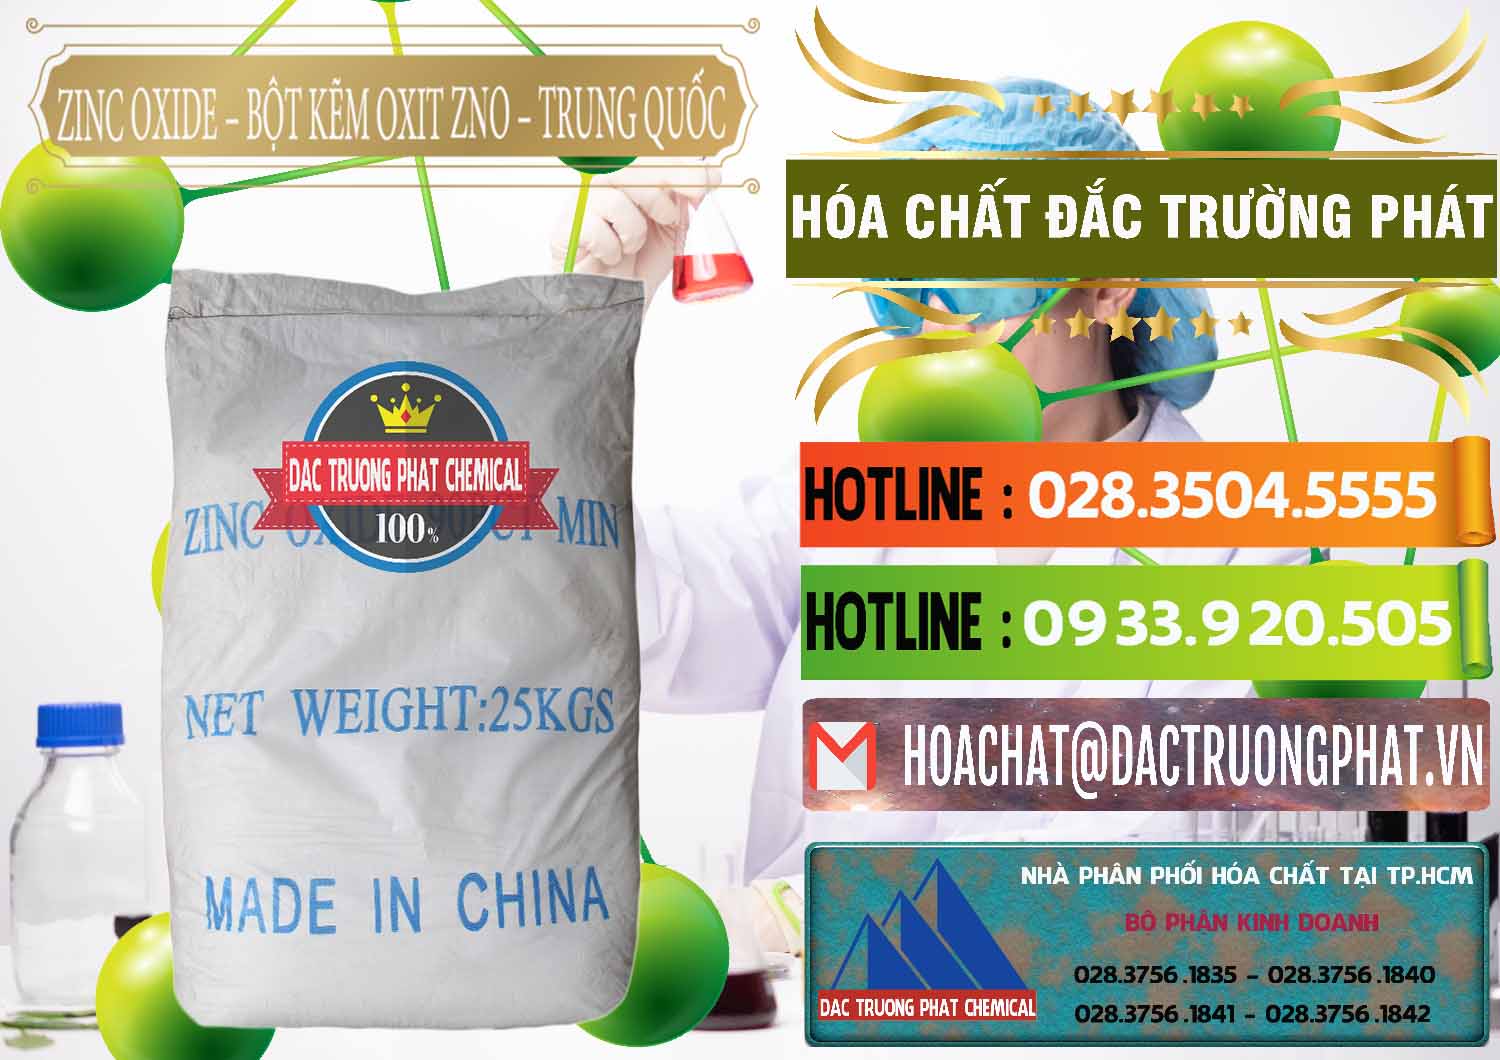 Cung cấp ( bán ) Zinc Oxide - Bột Kẽm Oxit ZNO Trung Quốc China - 0182 - Công ty chuyên kinh doanh _ cung cấp hóa chất tại TP.HCM - cungcaphoachat.com.vn